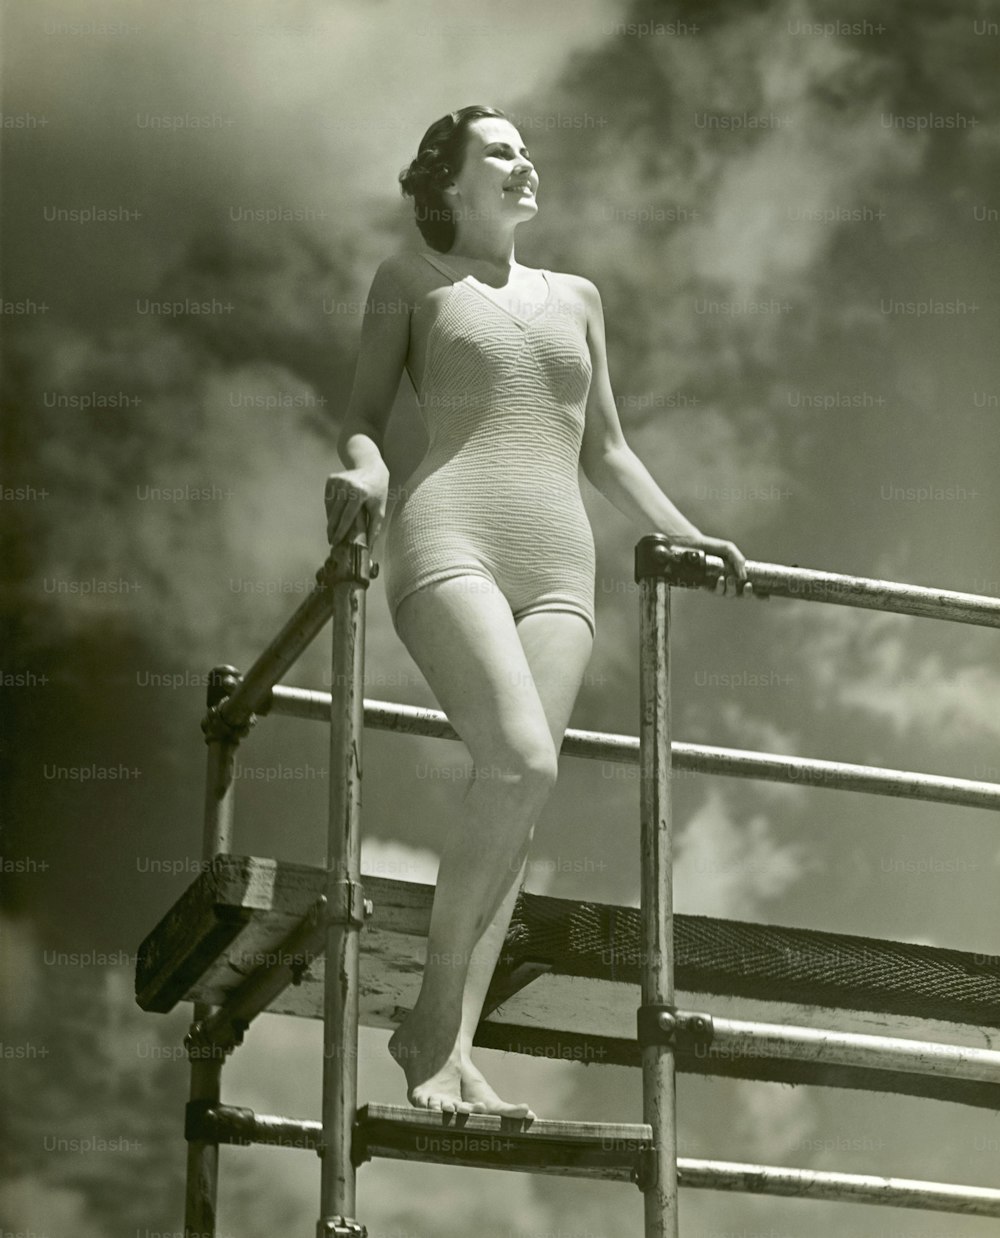 ESTADOS UNIDOS - CIRCA 1950s: Mujer en traje de baño en la escalera del trampolín.